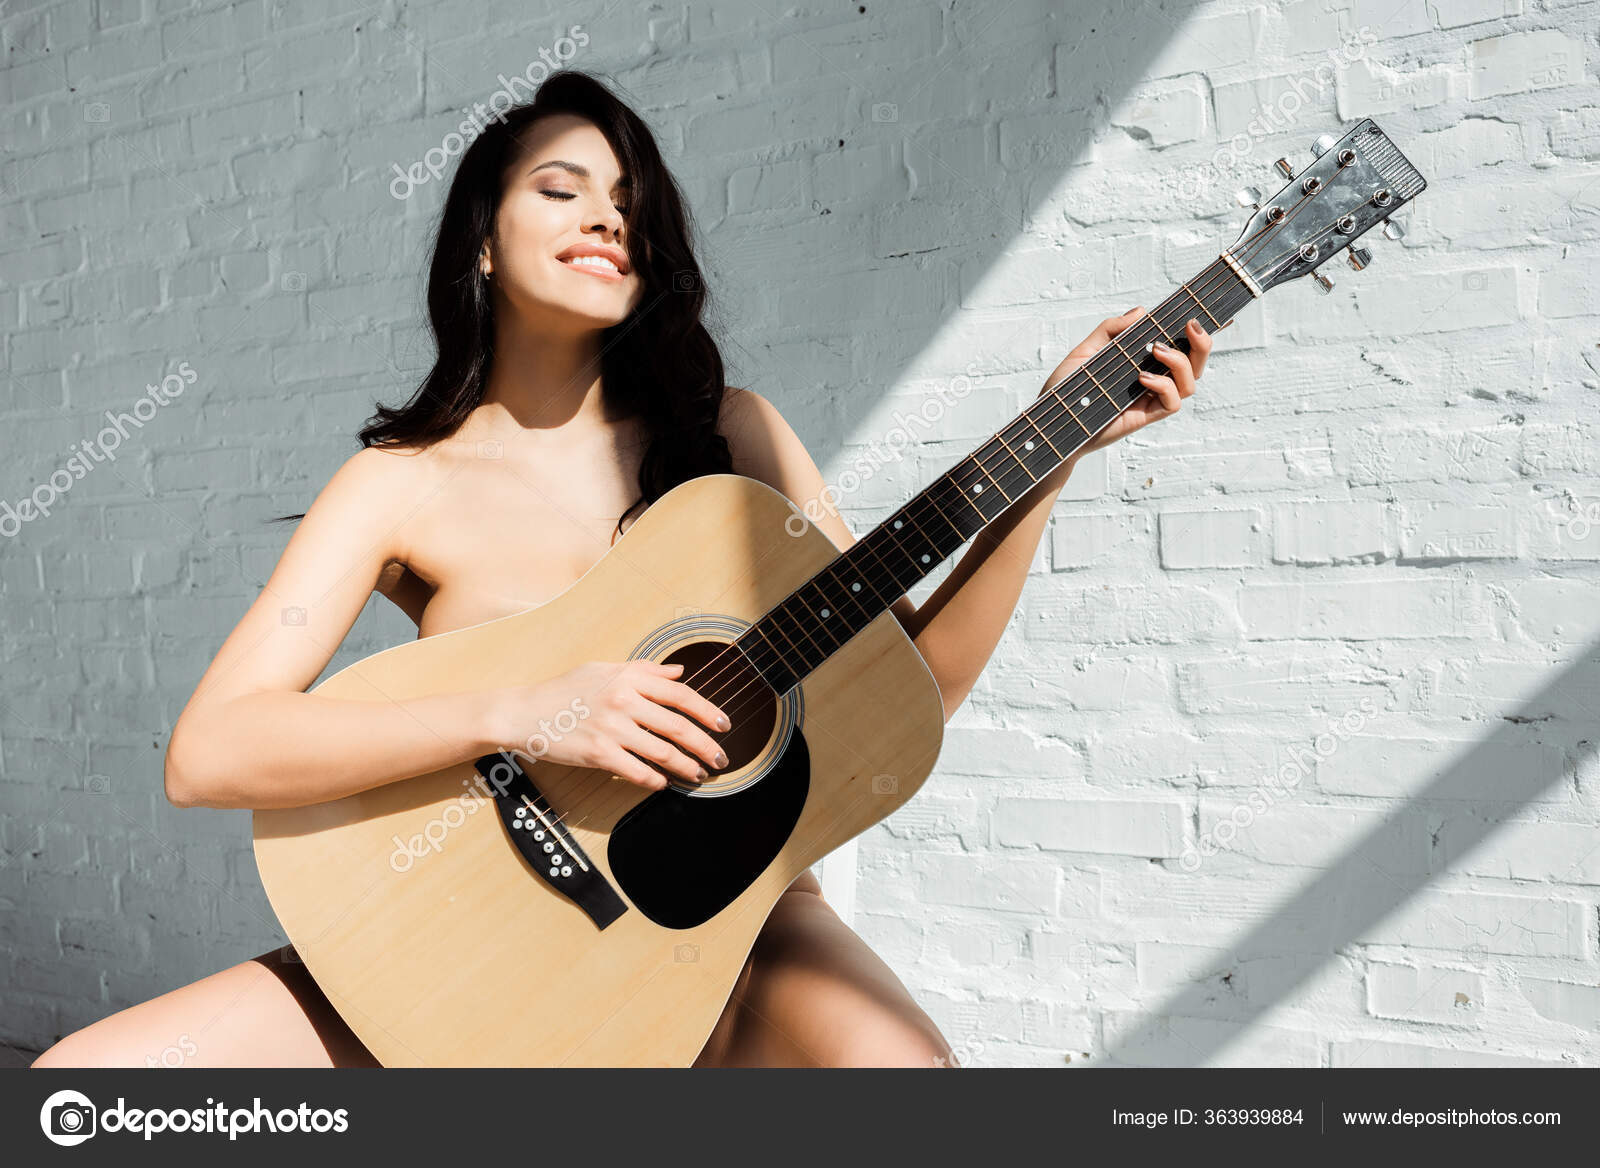 Naked Girls Playing Music